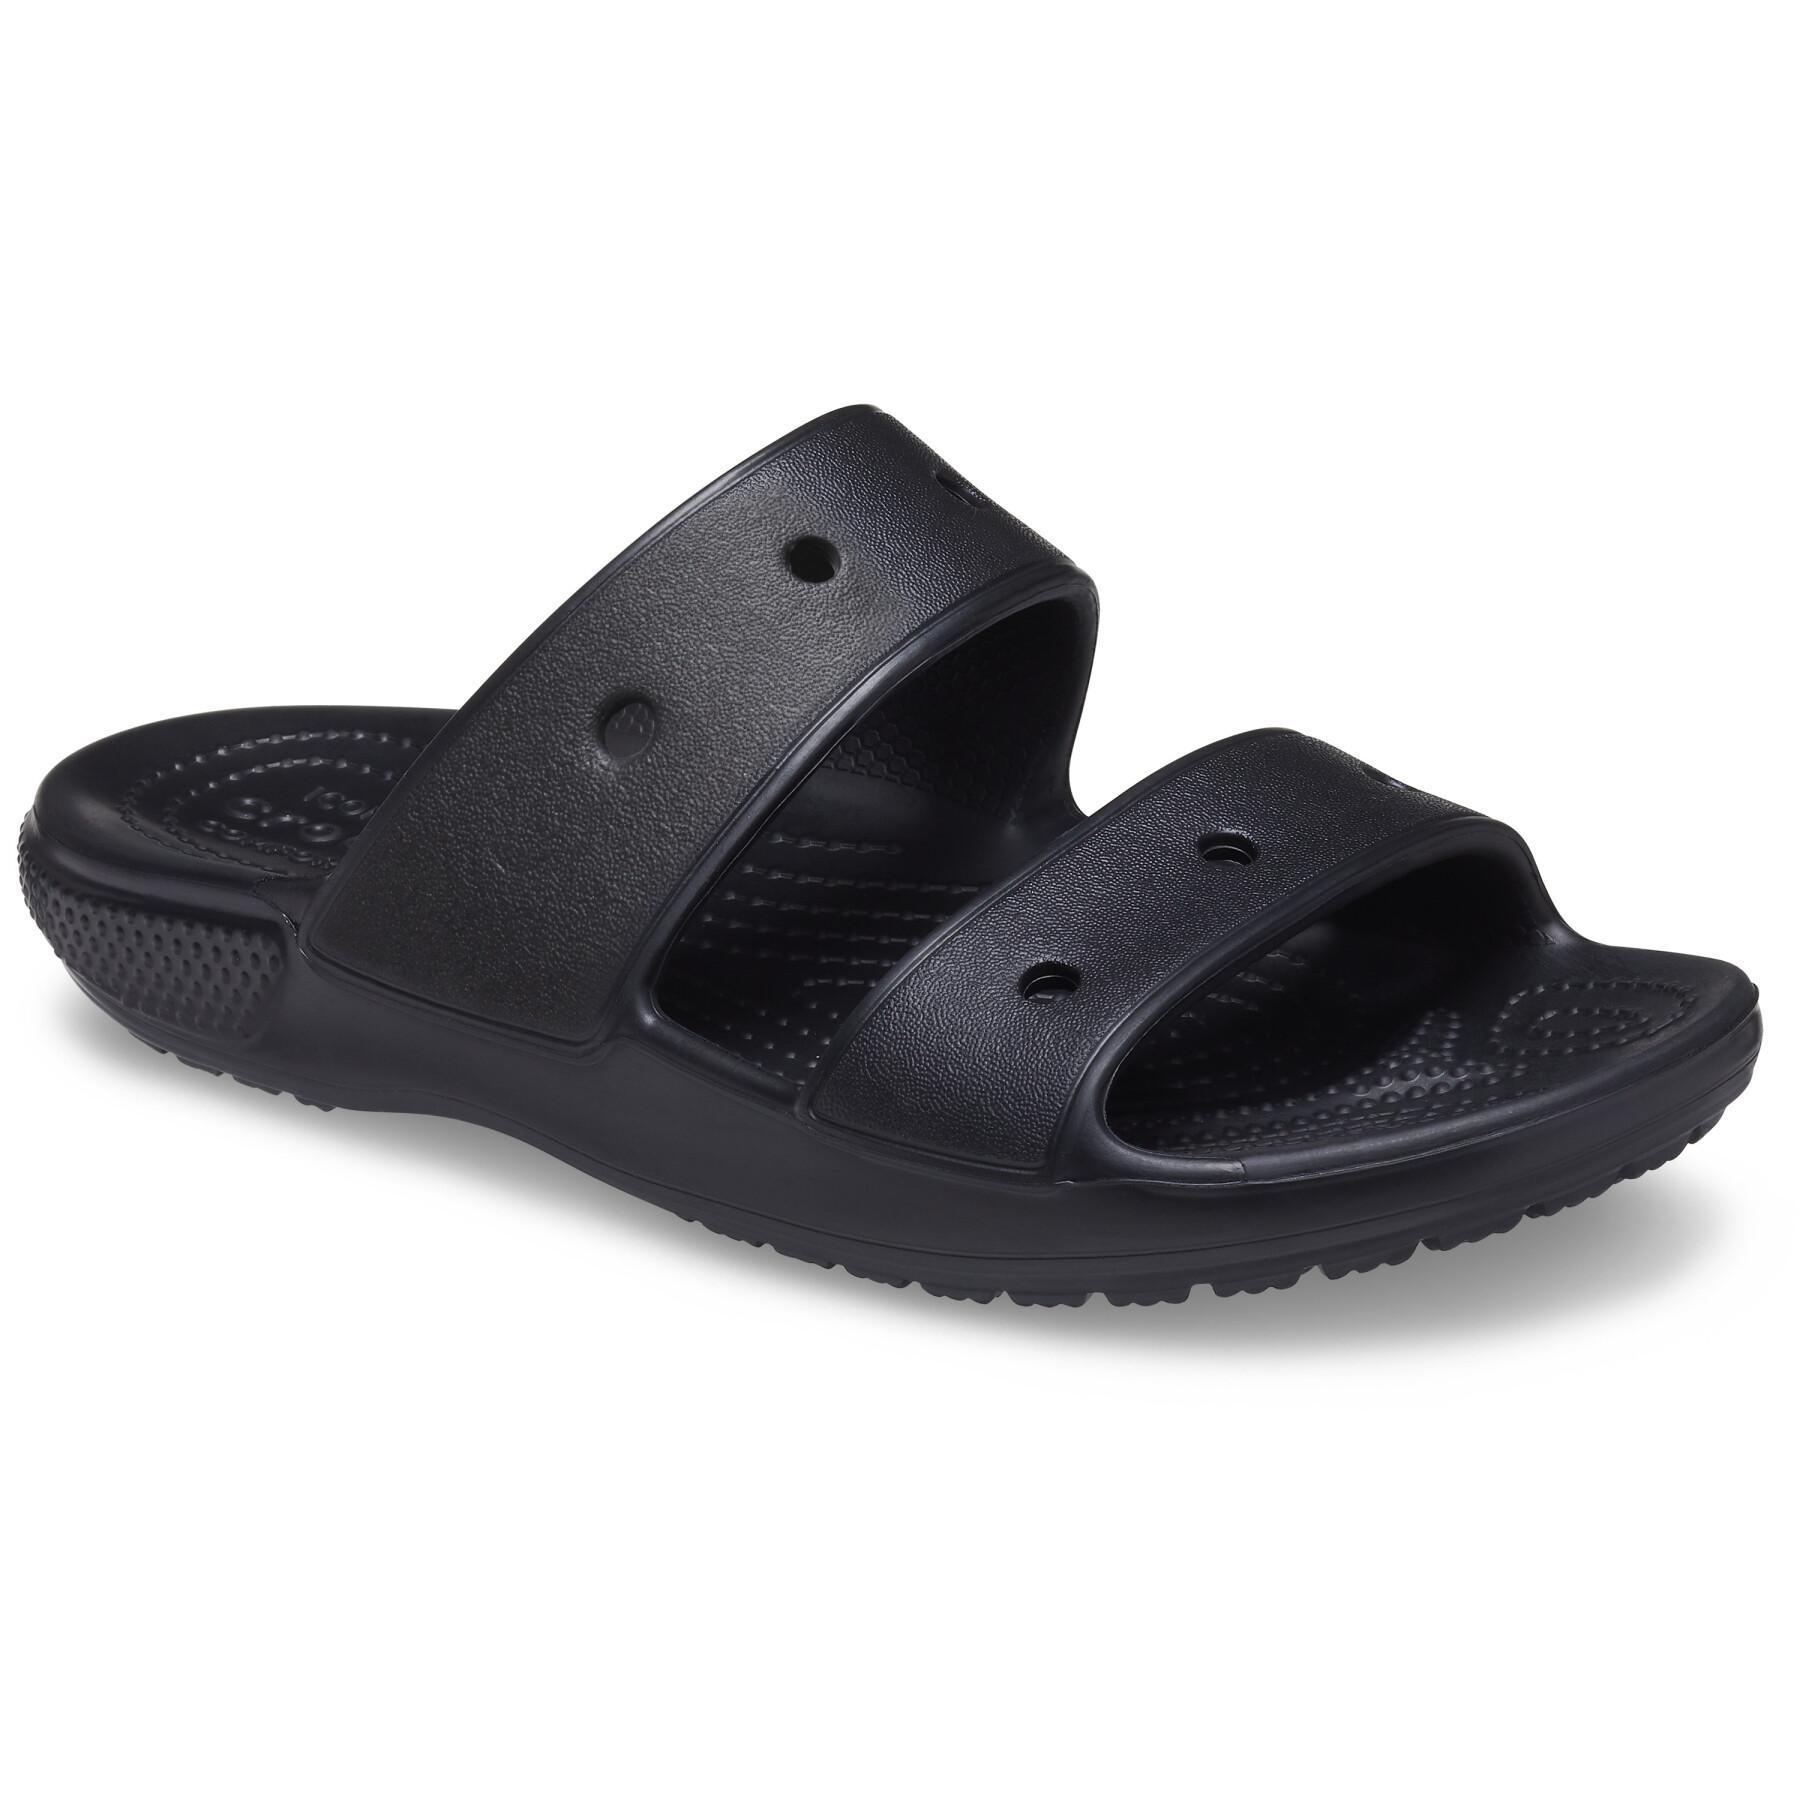 Sandals Crocs Classic